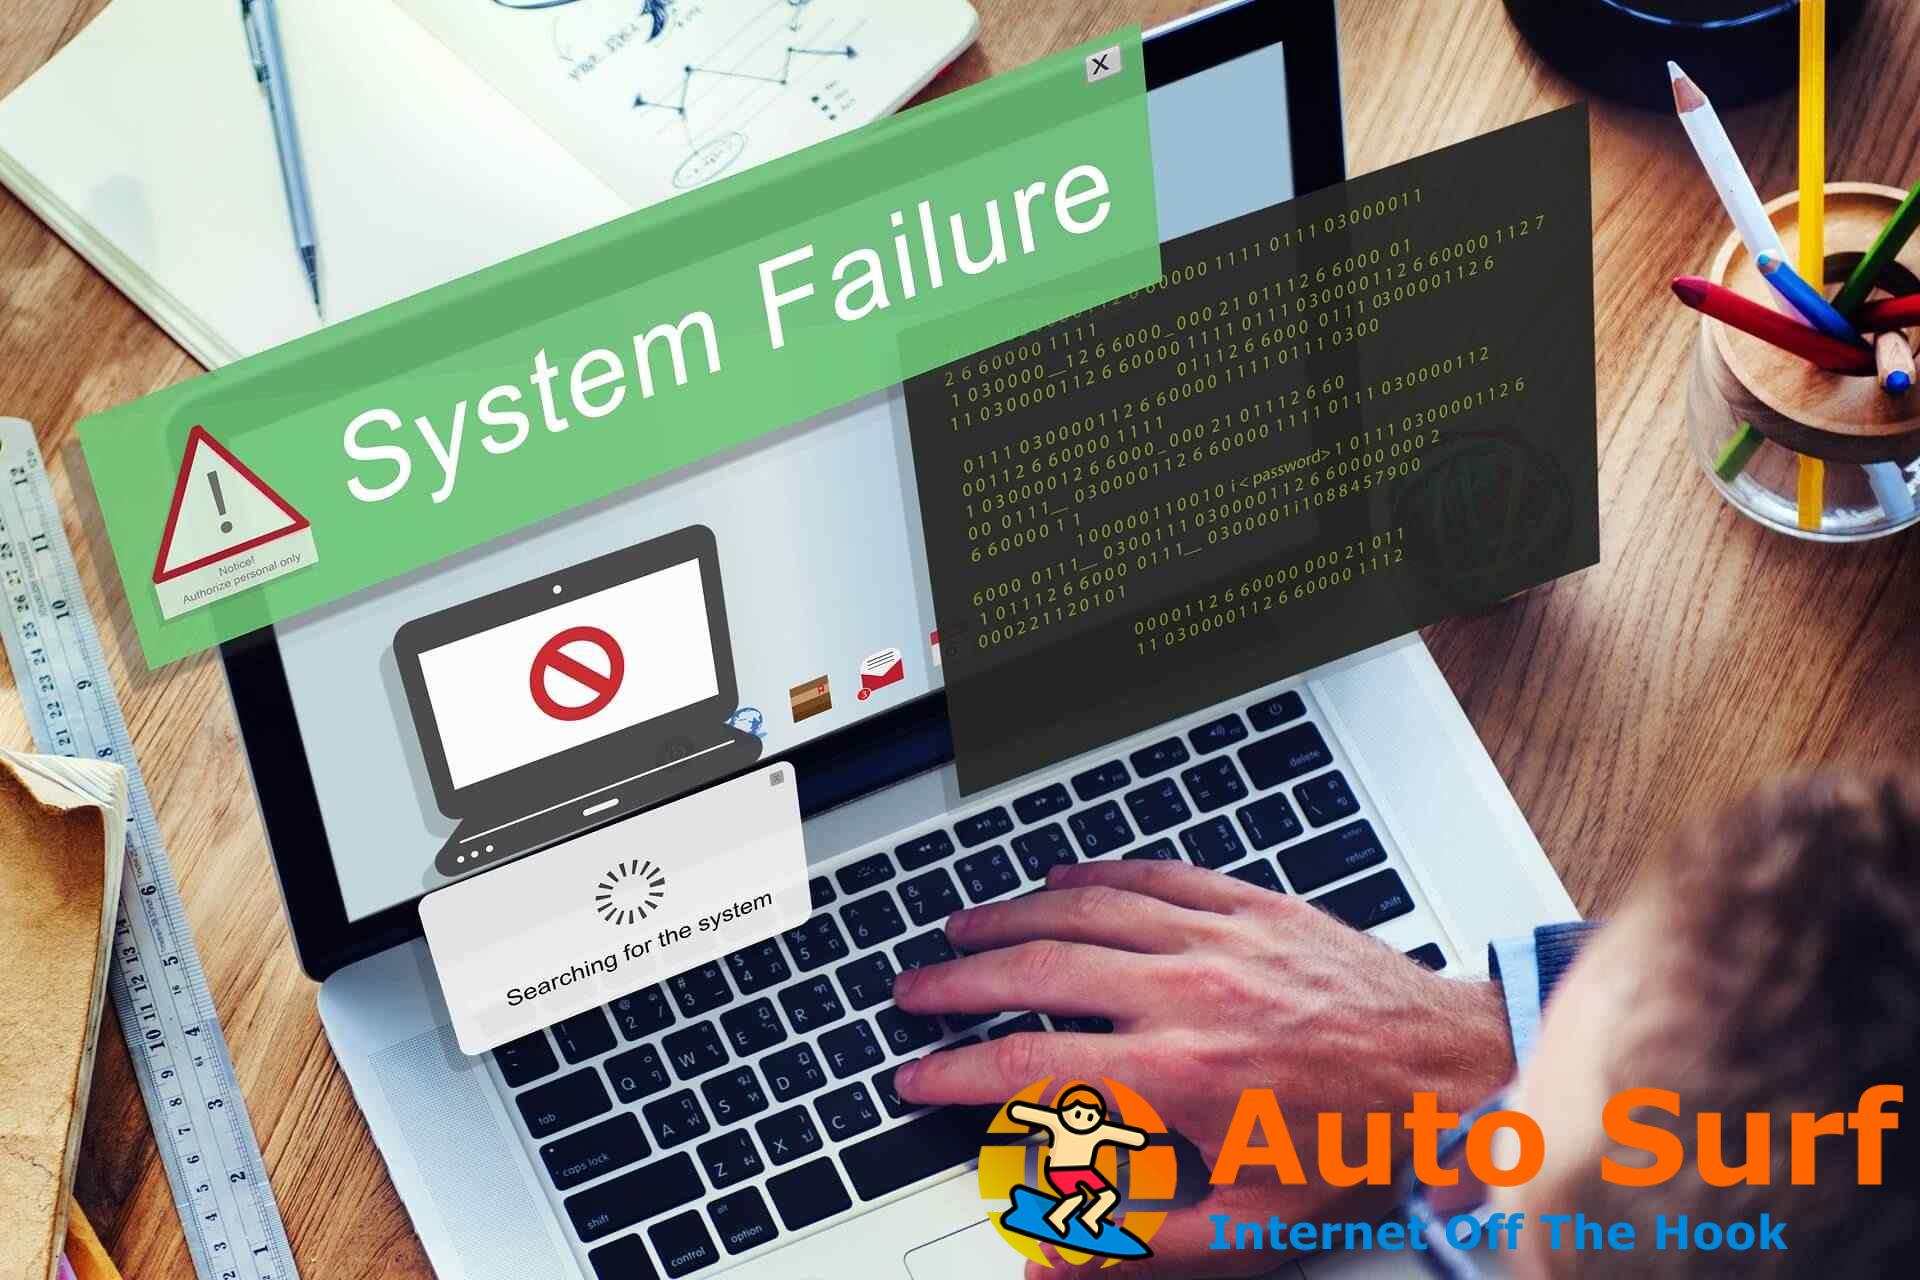 REVISIÓN: error fatal del sistema en Windows 10